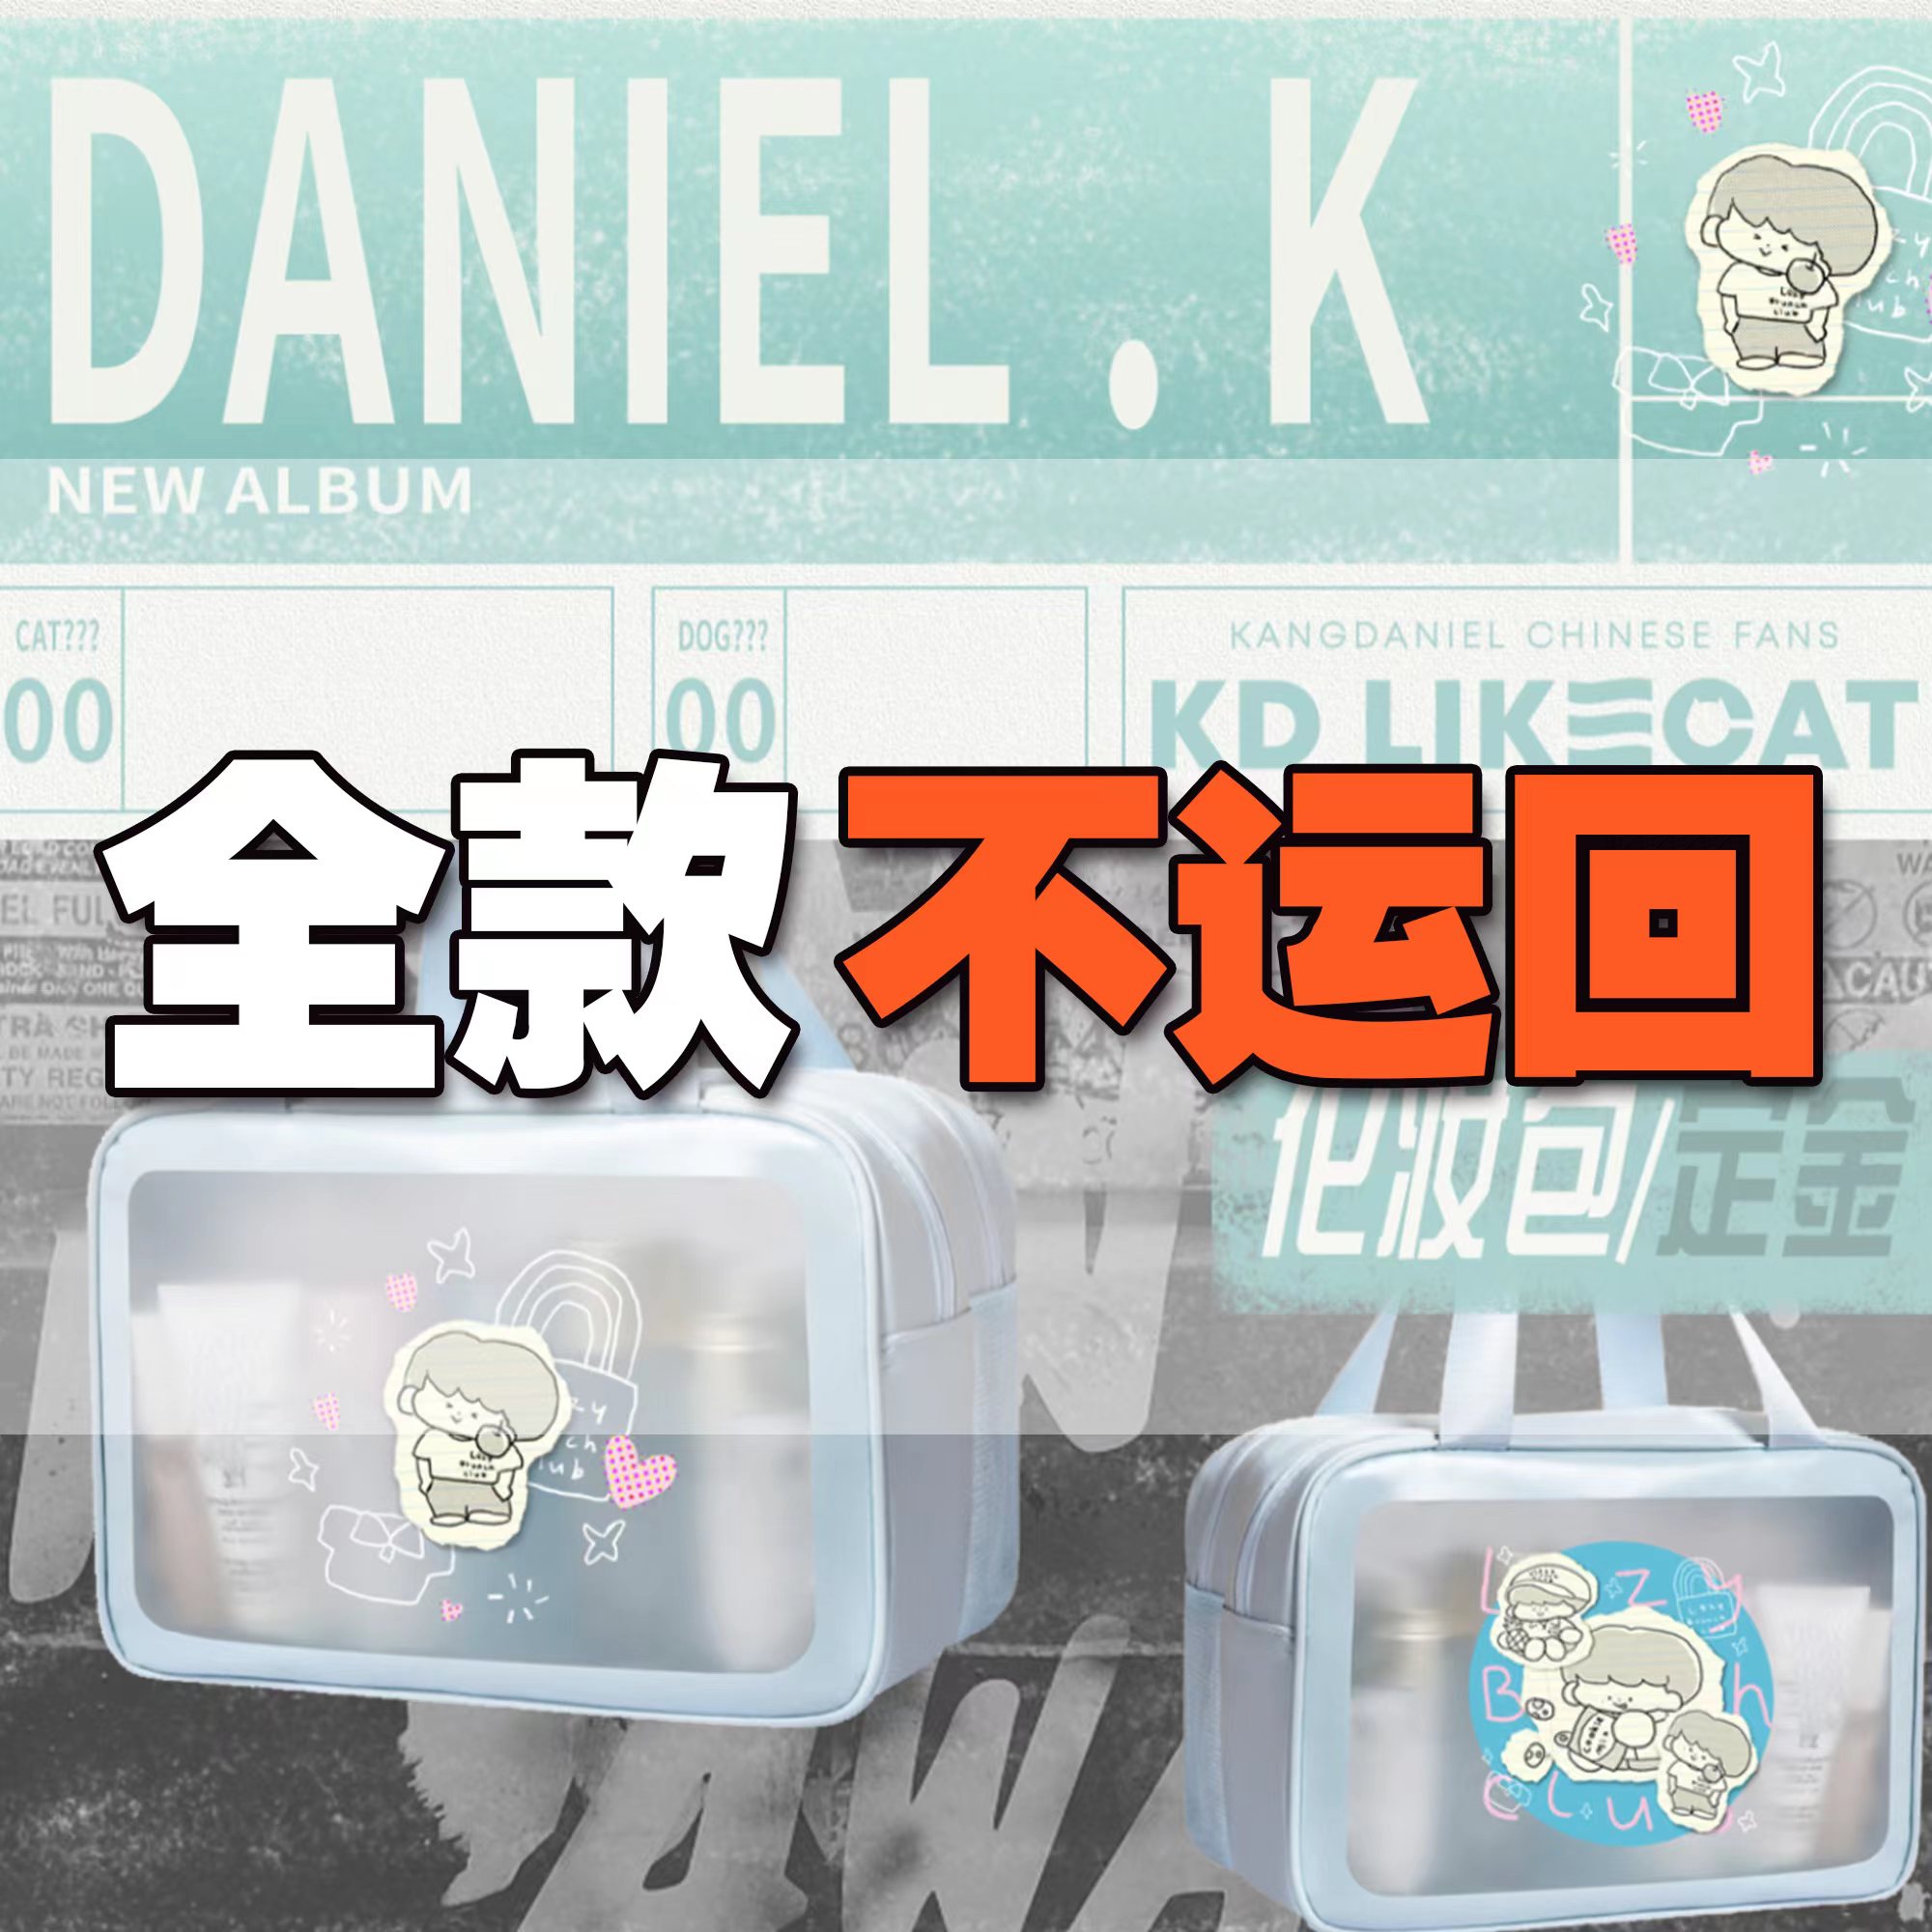 [拆卡专 化妆包 特典专] KANG DANIEL - 迷你4辑 [REALIEZ] (随机版本)_姜丹尼尔吧_likecat